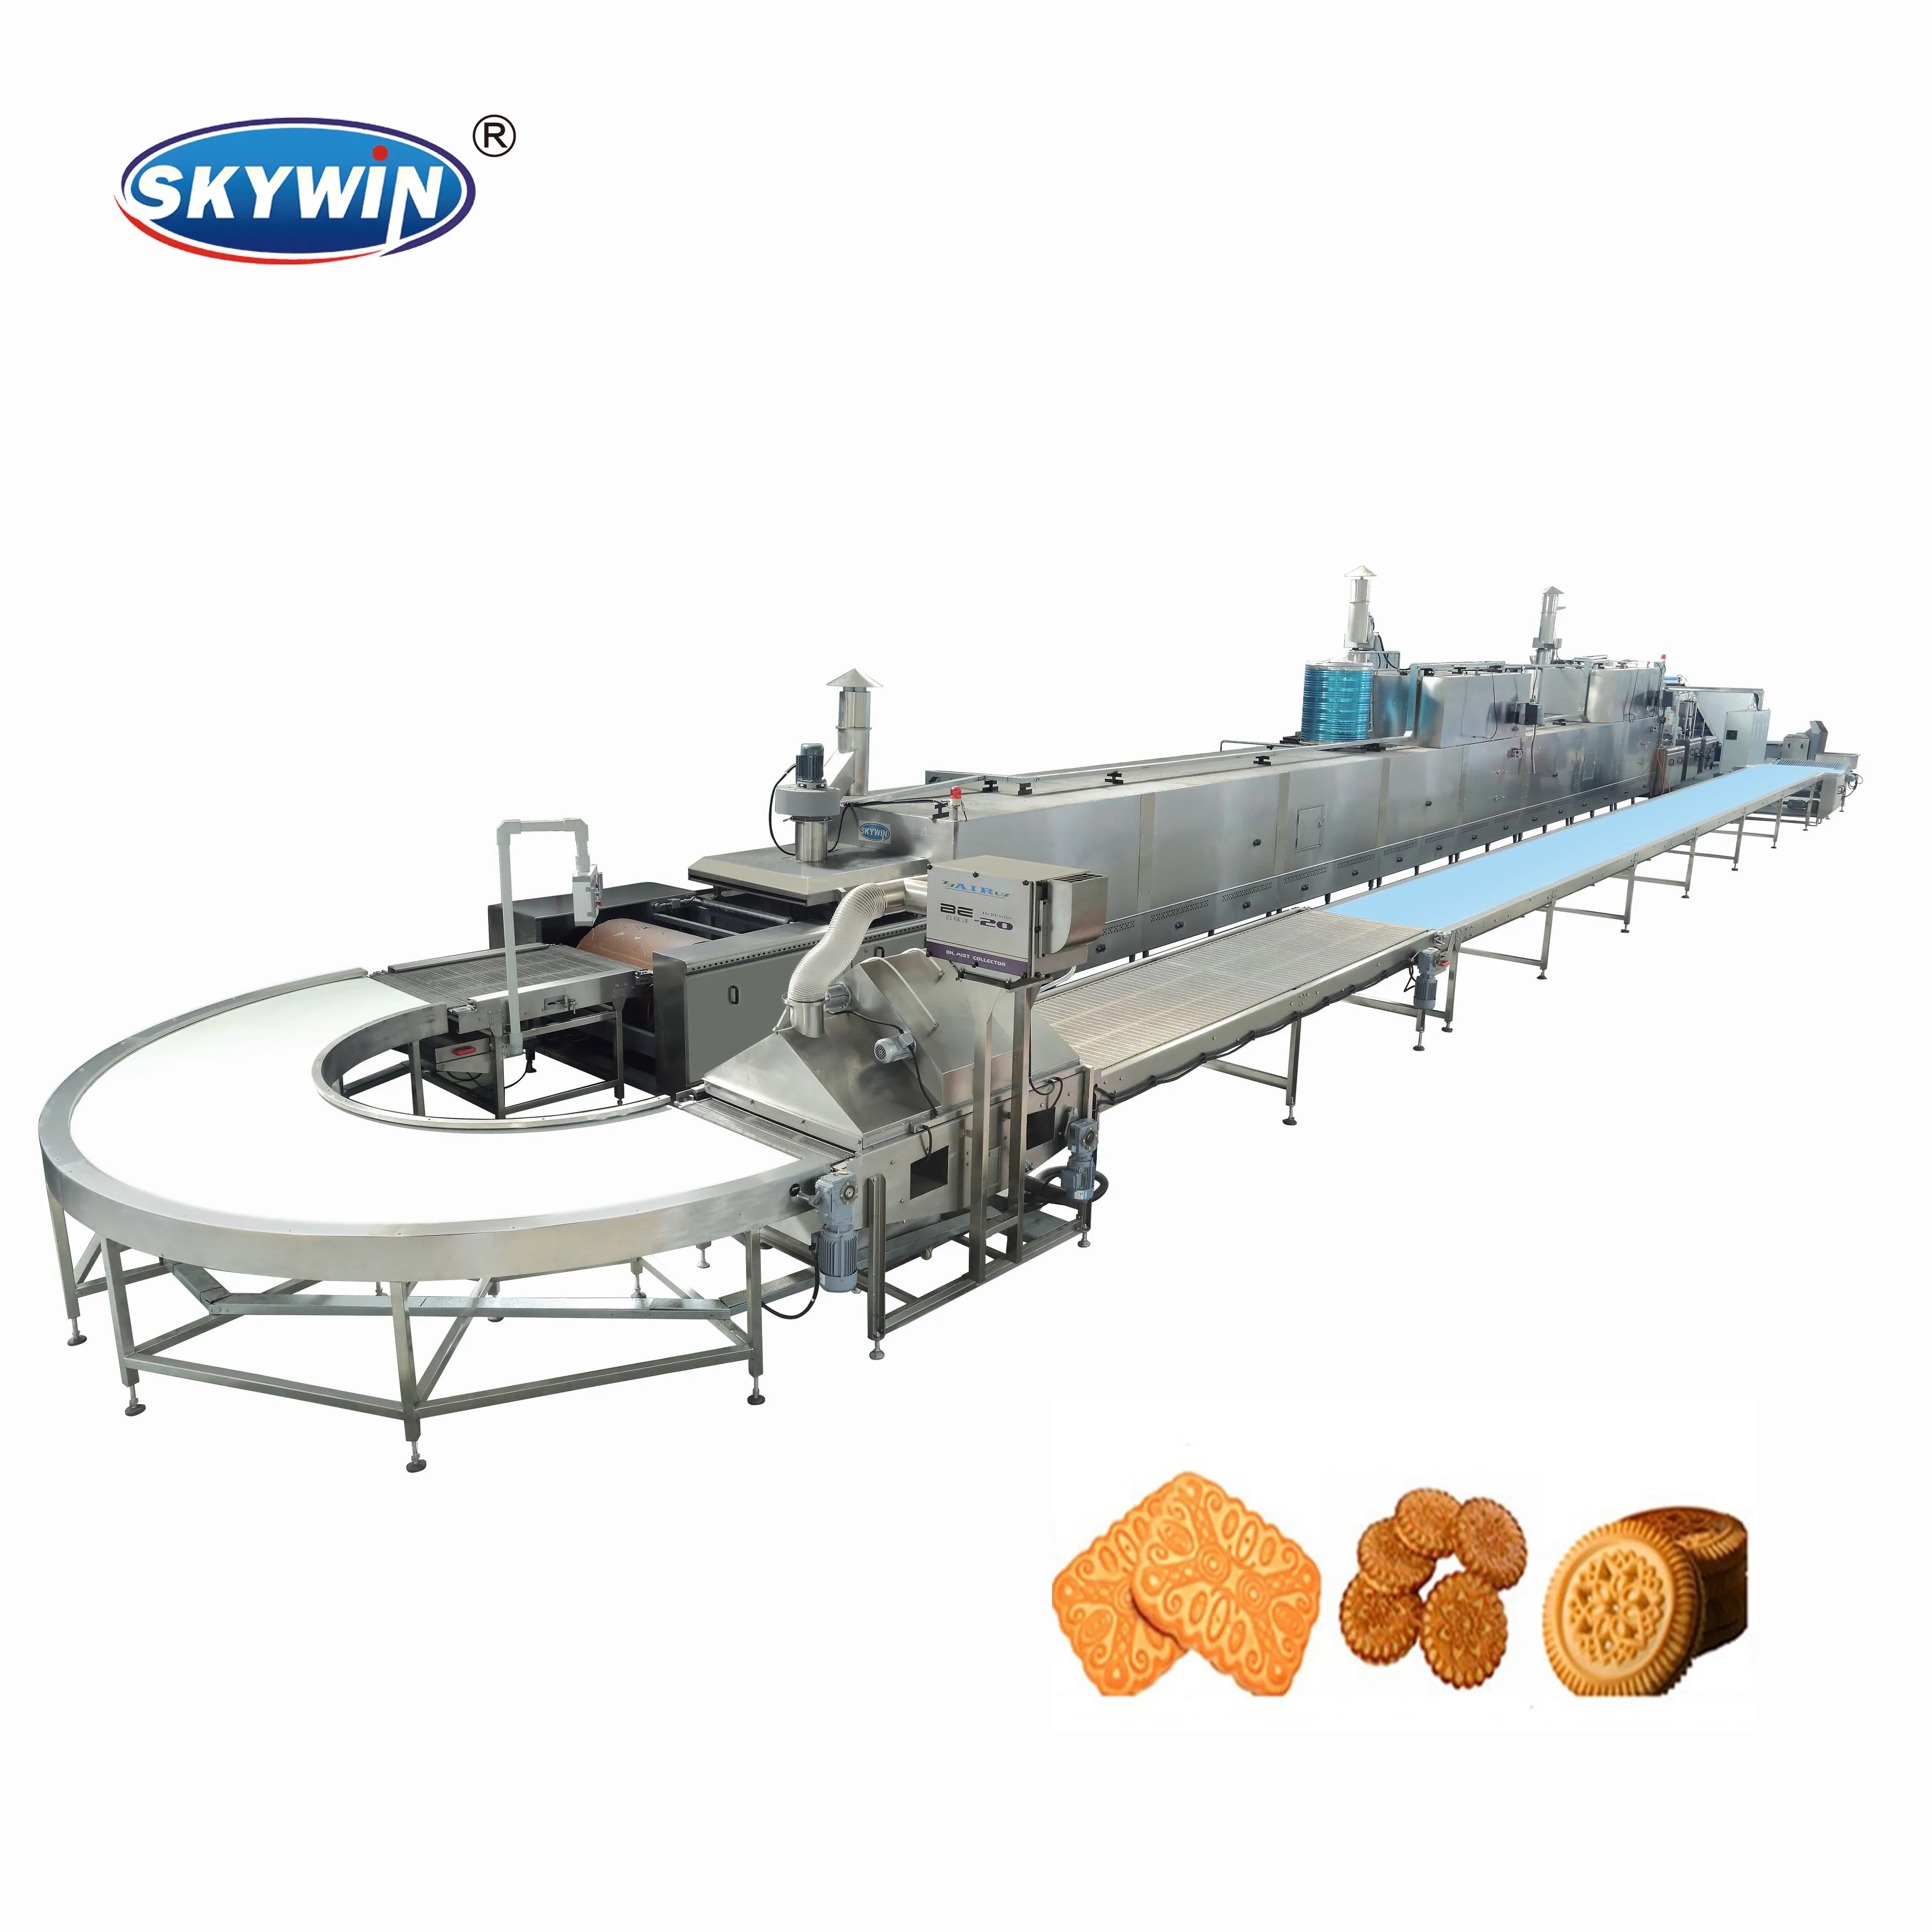 Skywin bisküvi makinesi üretim hattı üretim otomatik bisküvi yapma makinesi çin'de